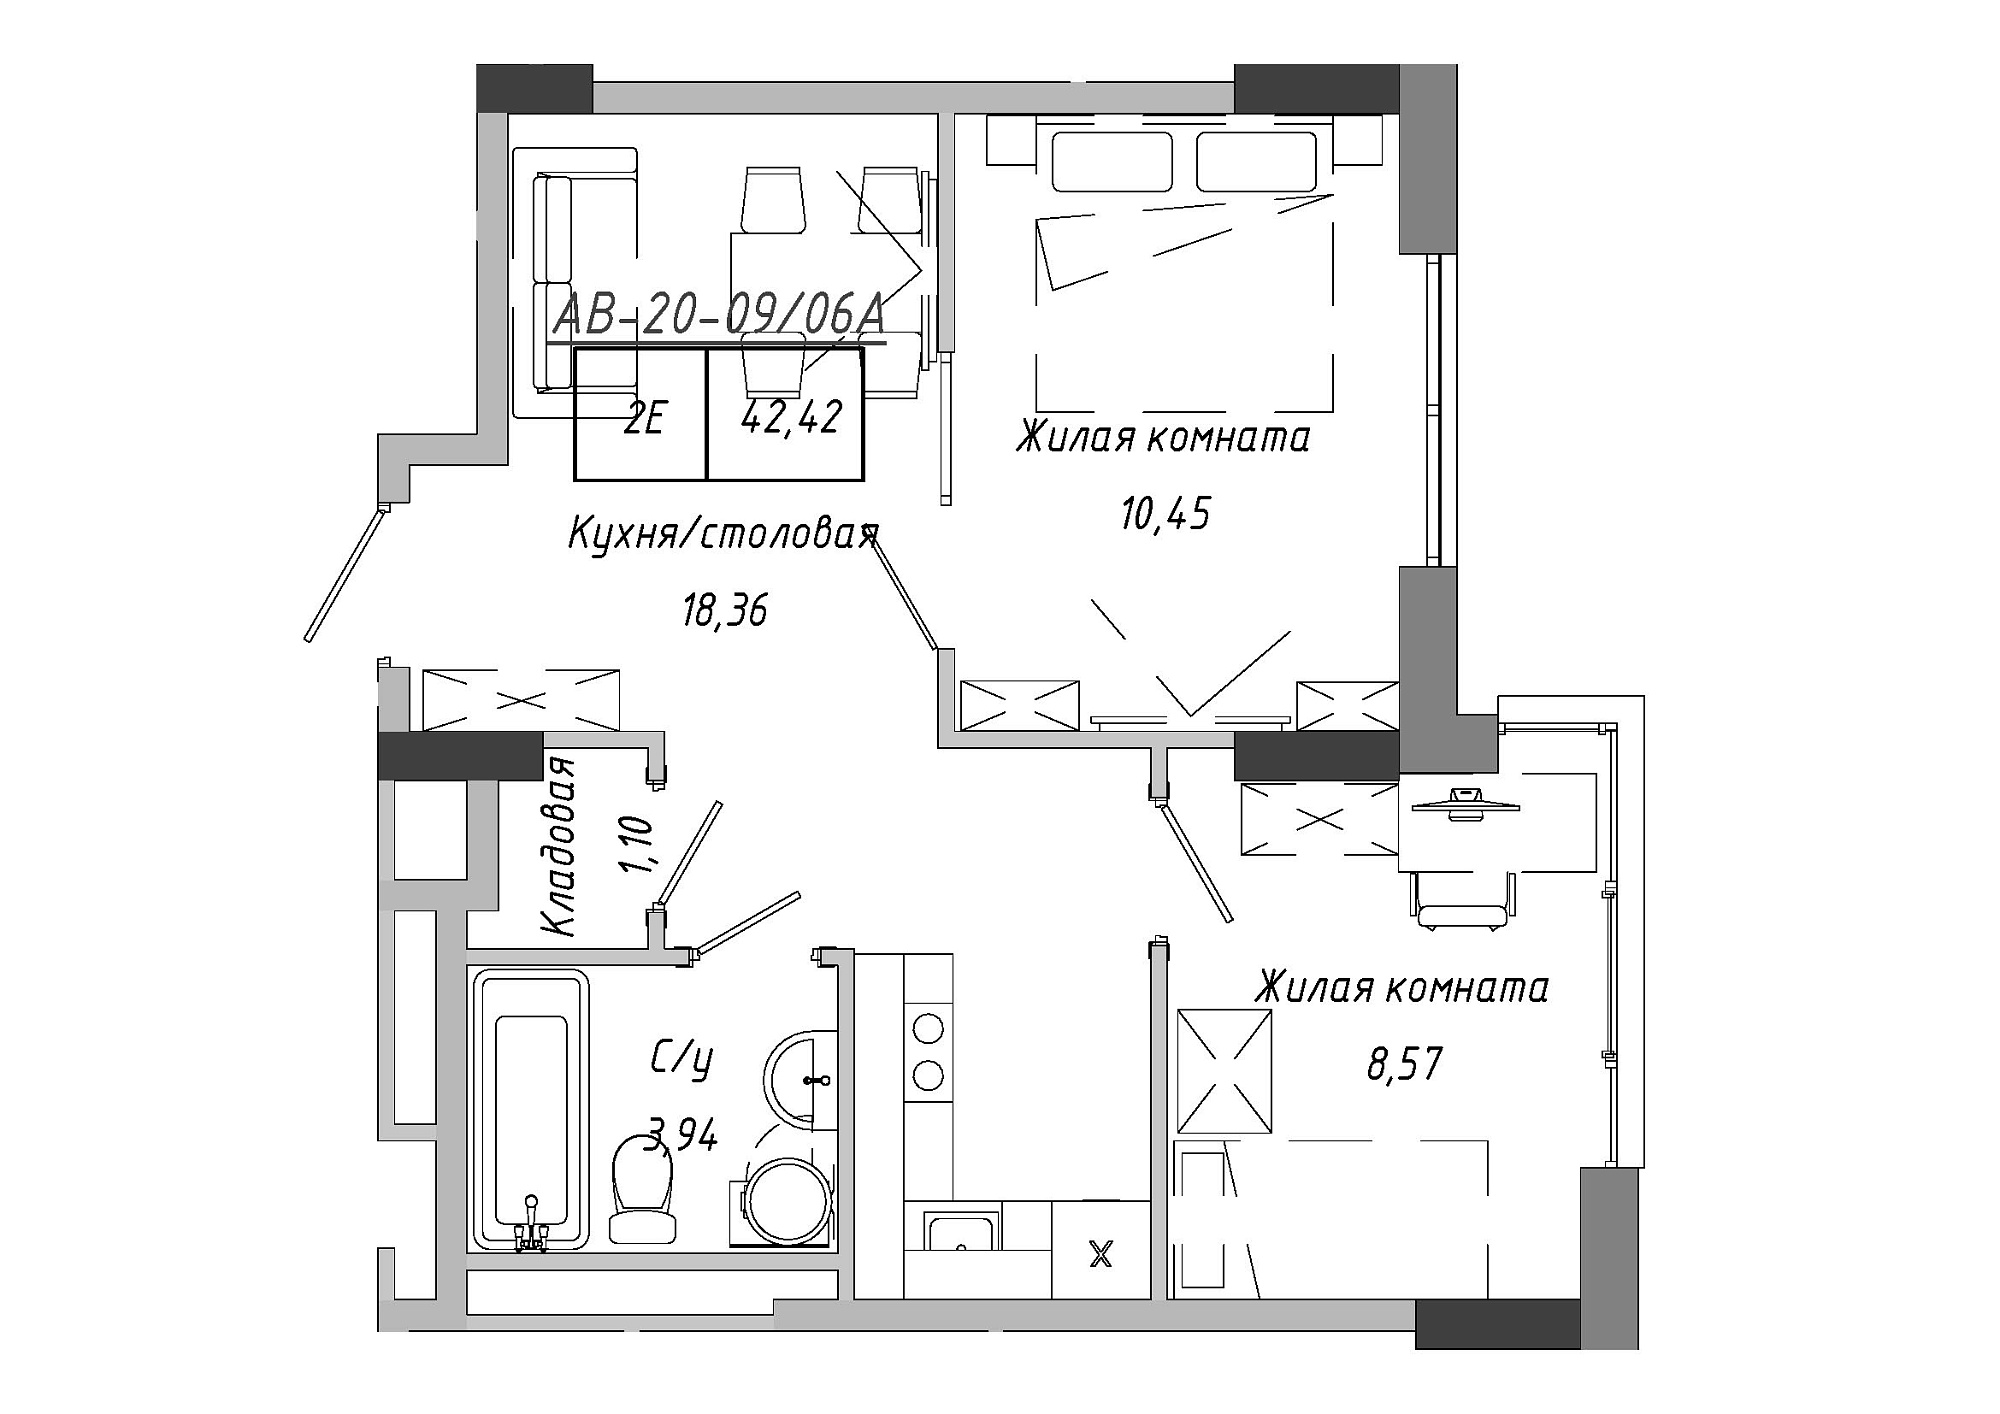 Планування 2-к квартира площею 42.85м2, AB-20-09/0006а.